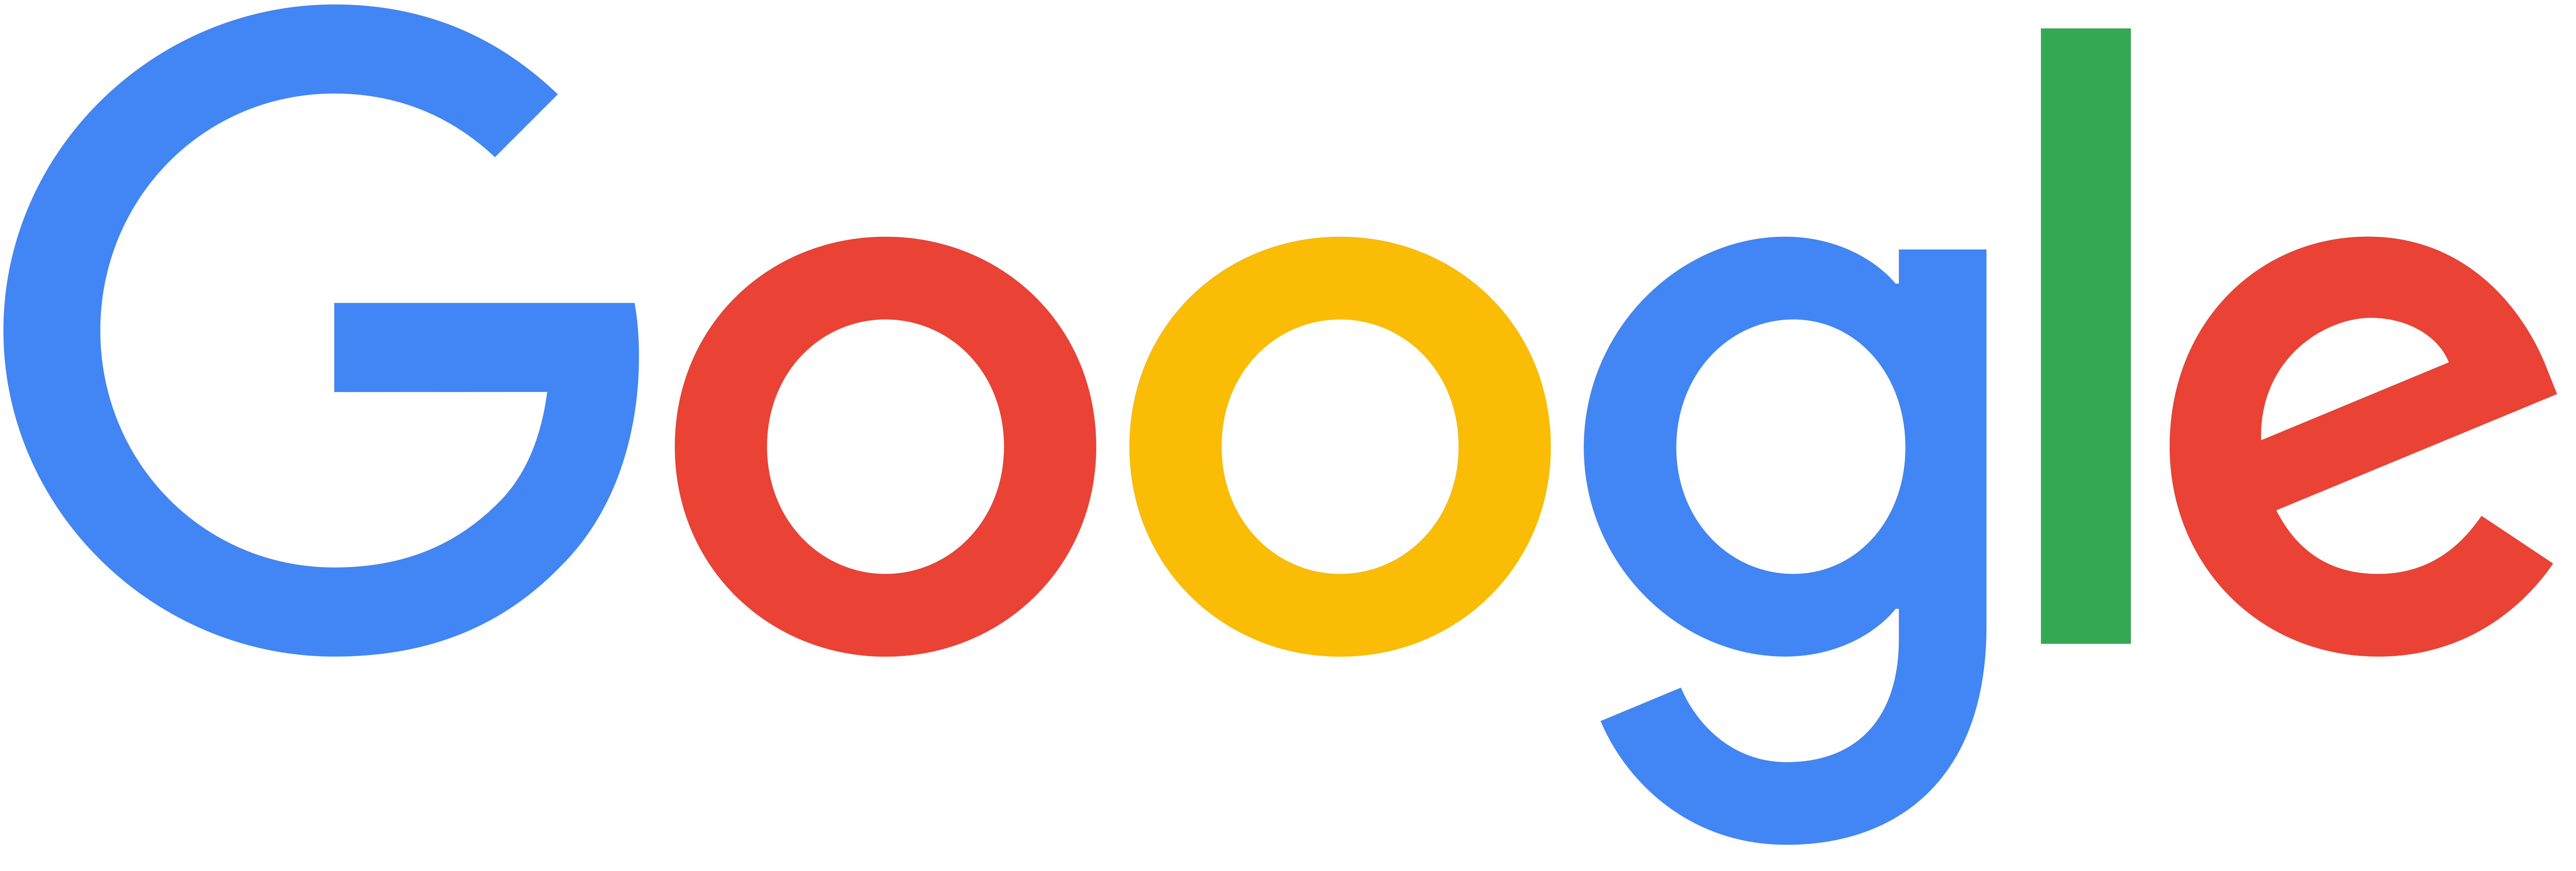 Company-Google